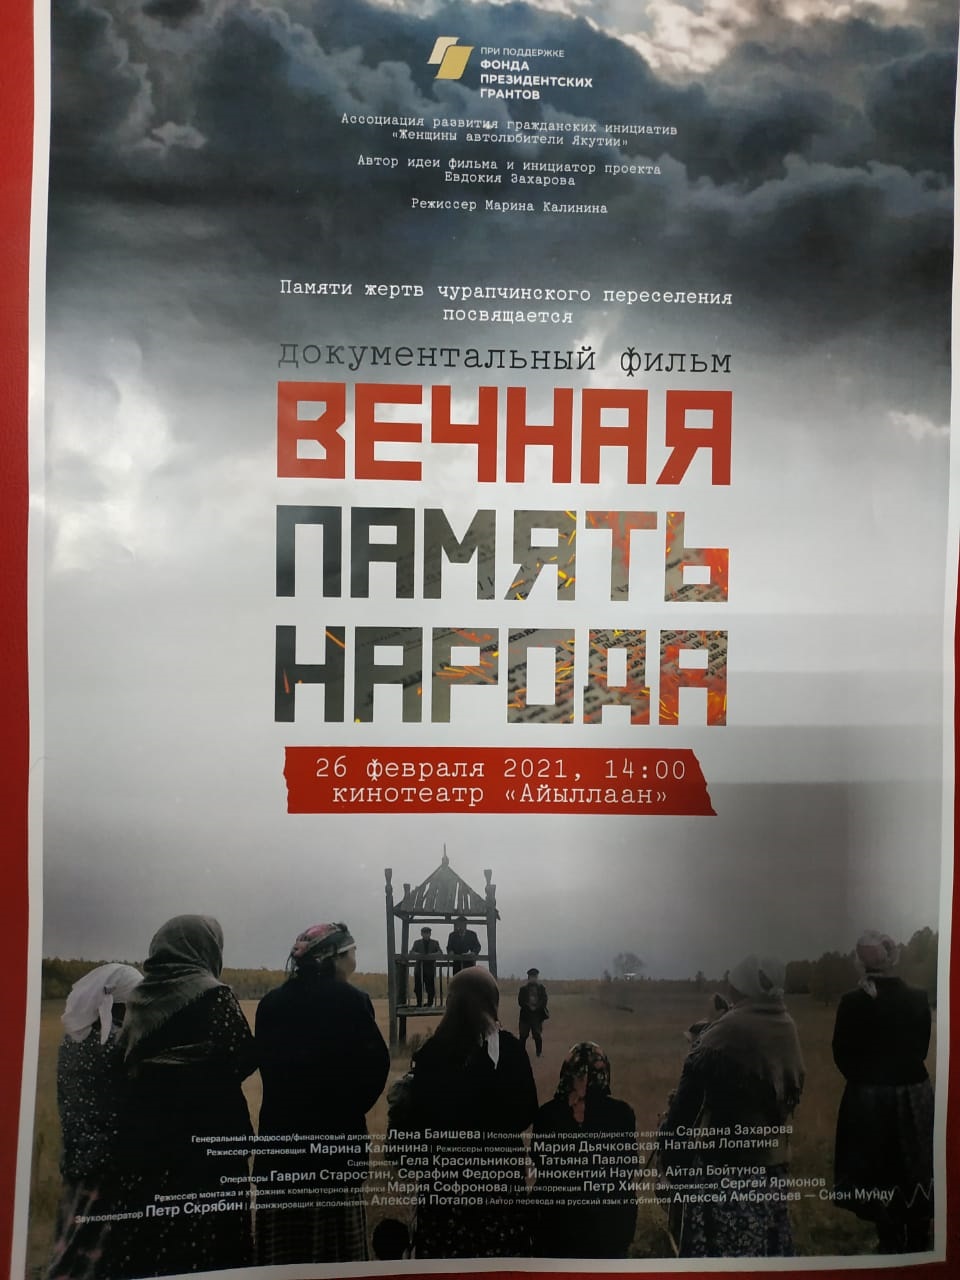 В Якутске покажут фильм о чурапчинском переселении «Вечная память народа»